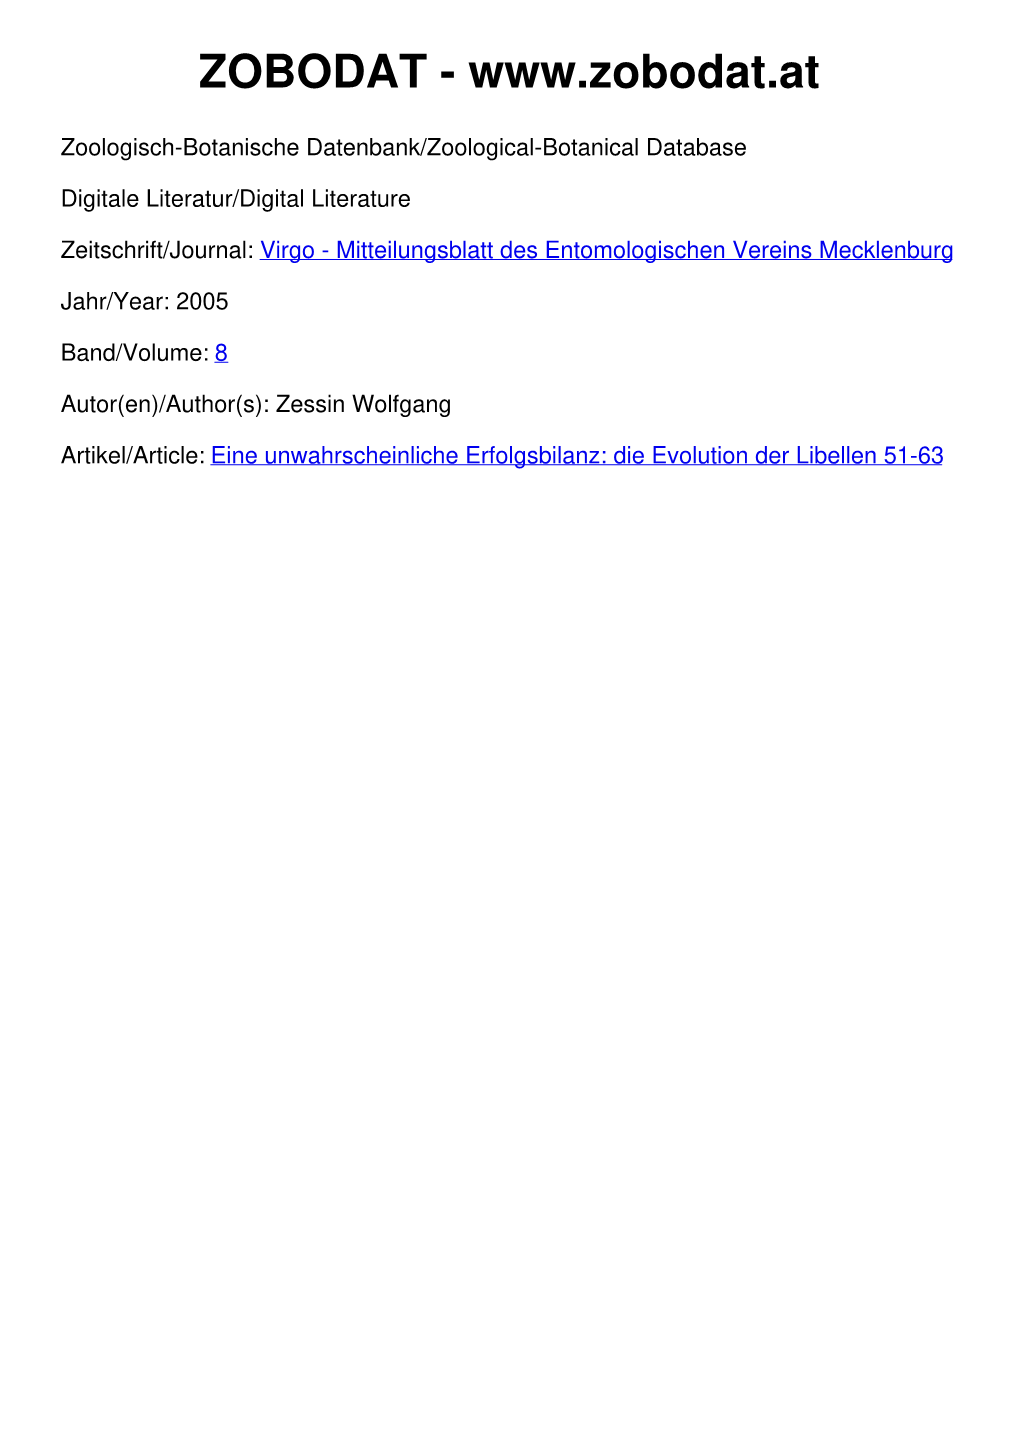 Die Evolution Der Libellen 51-63 Eine Unwahrscheinliche Erfolgsbilanz: Die Evolution Der Libellen* Wolfgang Zessin, Schwerin